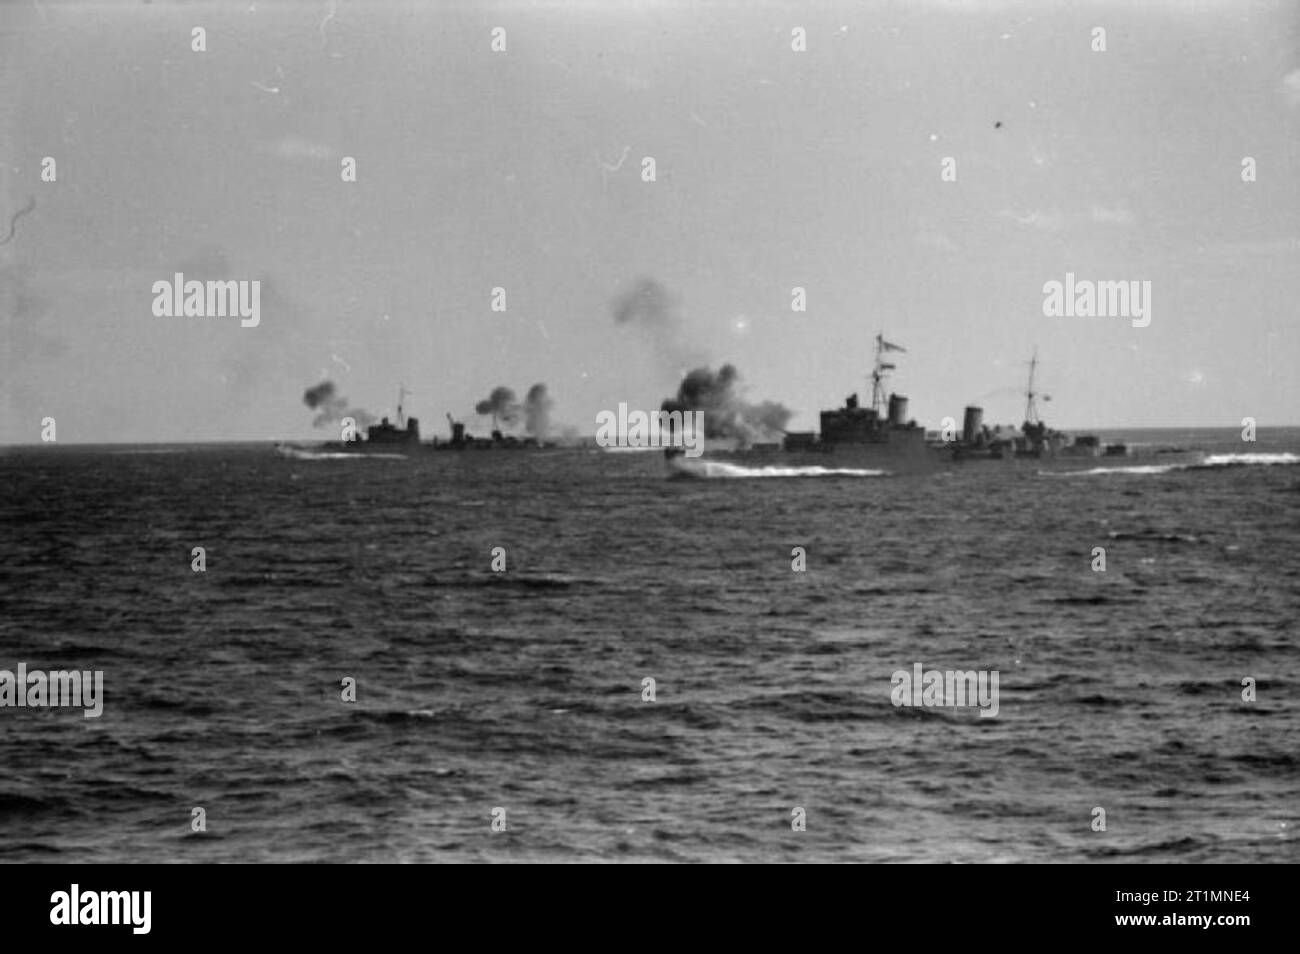 Die Royal Navy während des Zweiten Weltkriegs zwei Kreuzer Einkuppeln der Feind während der Flotte Aktion aus Sardinien. Foto von HMS Sheffield genommen. Einen italienischen Kreuzer und zwei italienischen Zerstörer wurden in diese Aktion beschädigt. Stockfoto